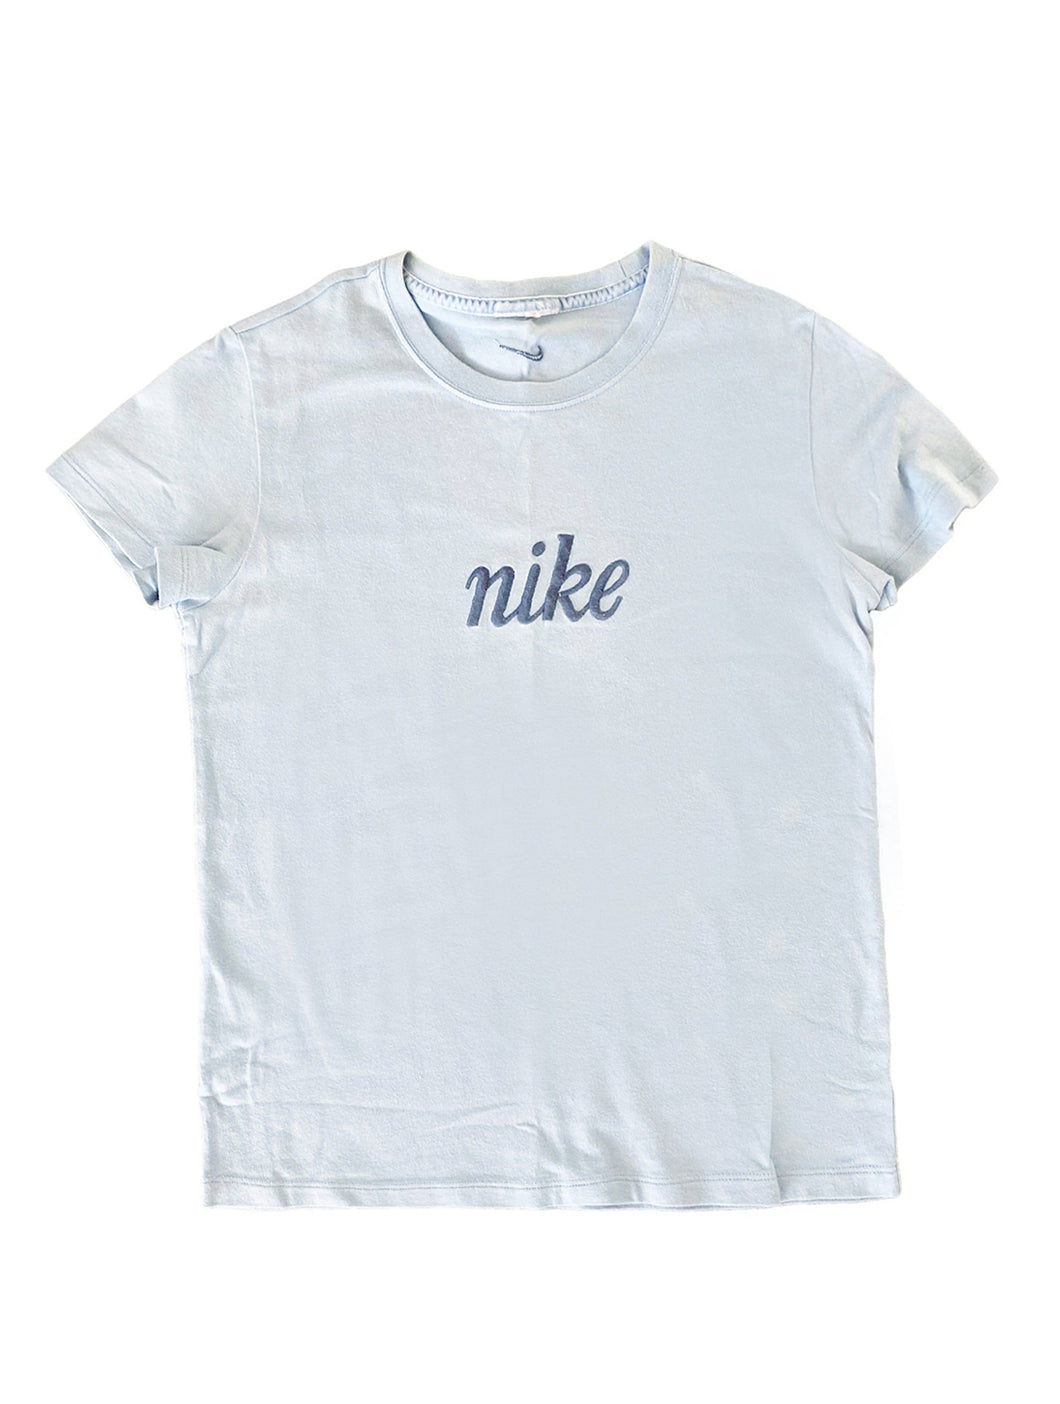 Nike Vintage Mini Blue T-Shirt